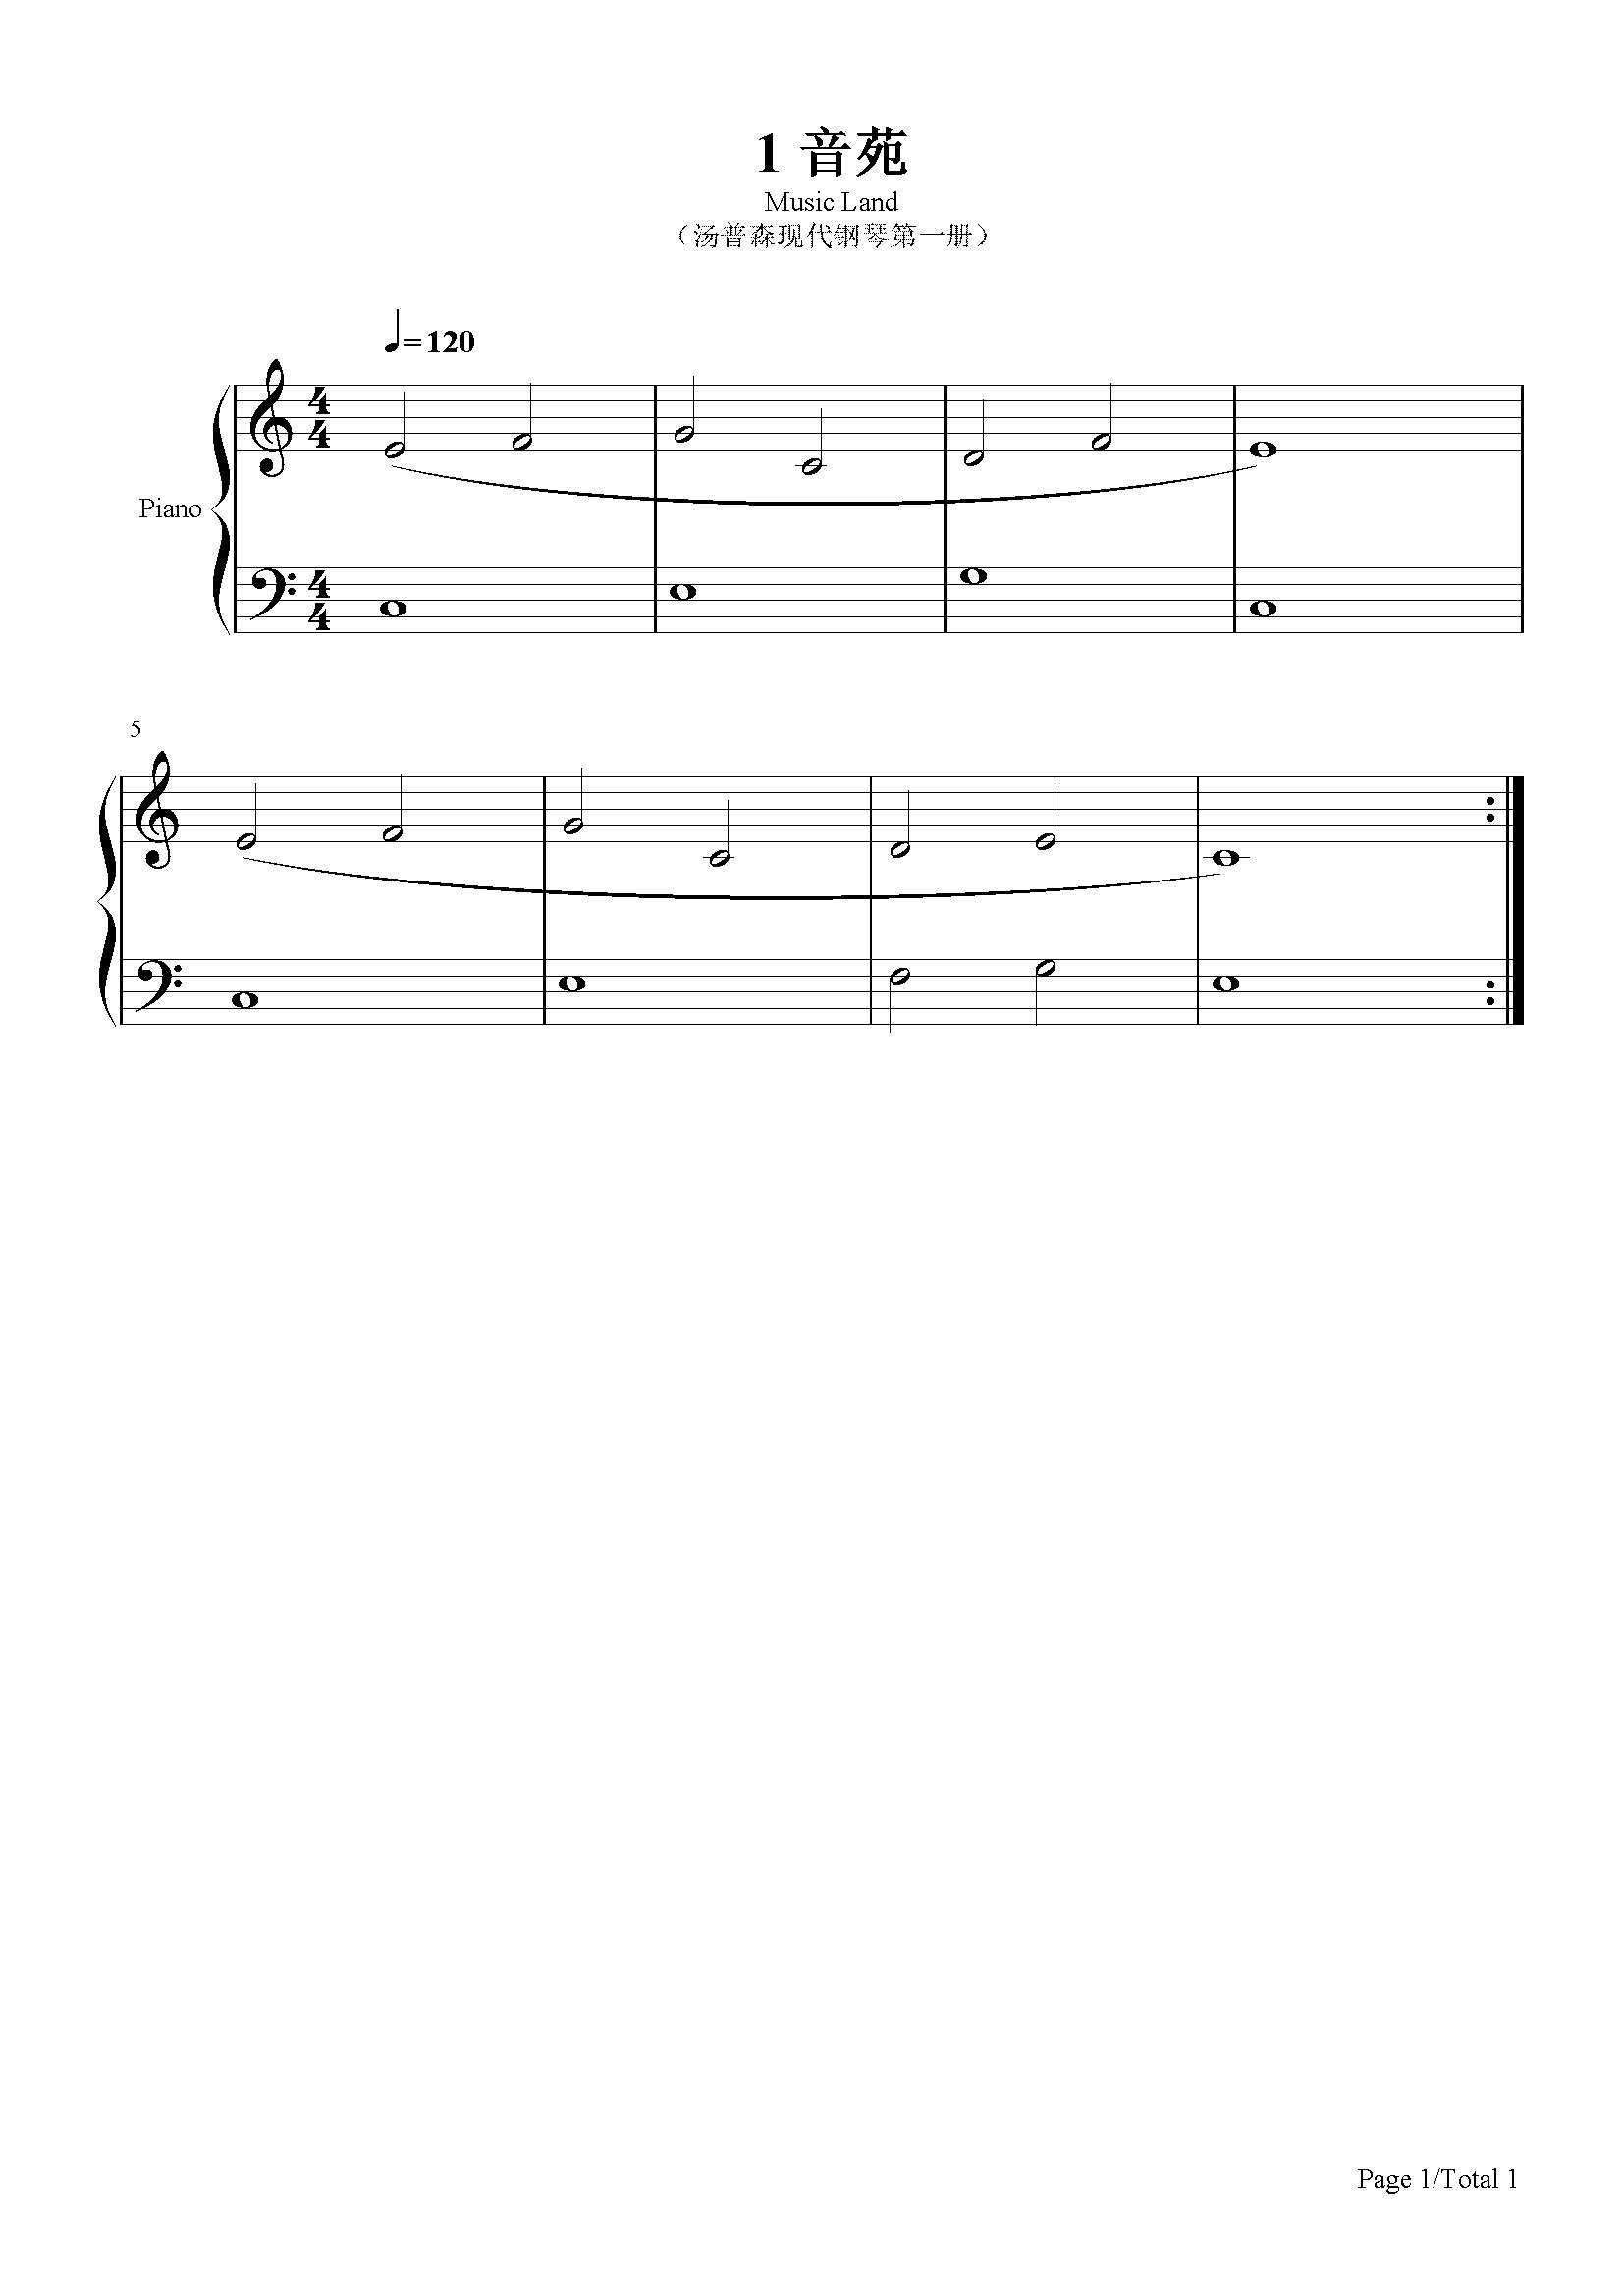 音苑-汤普森-c调 -古典钢琴五线谱